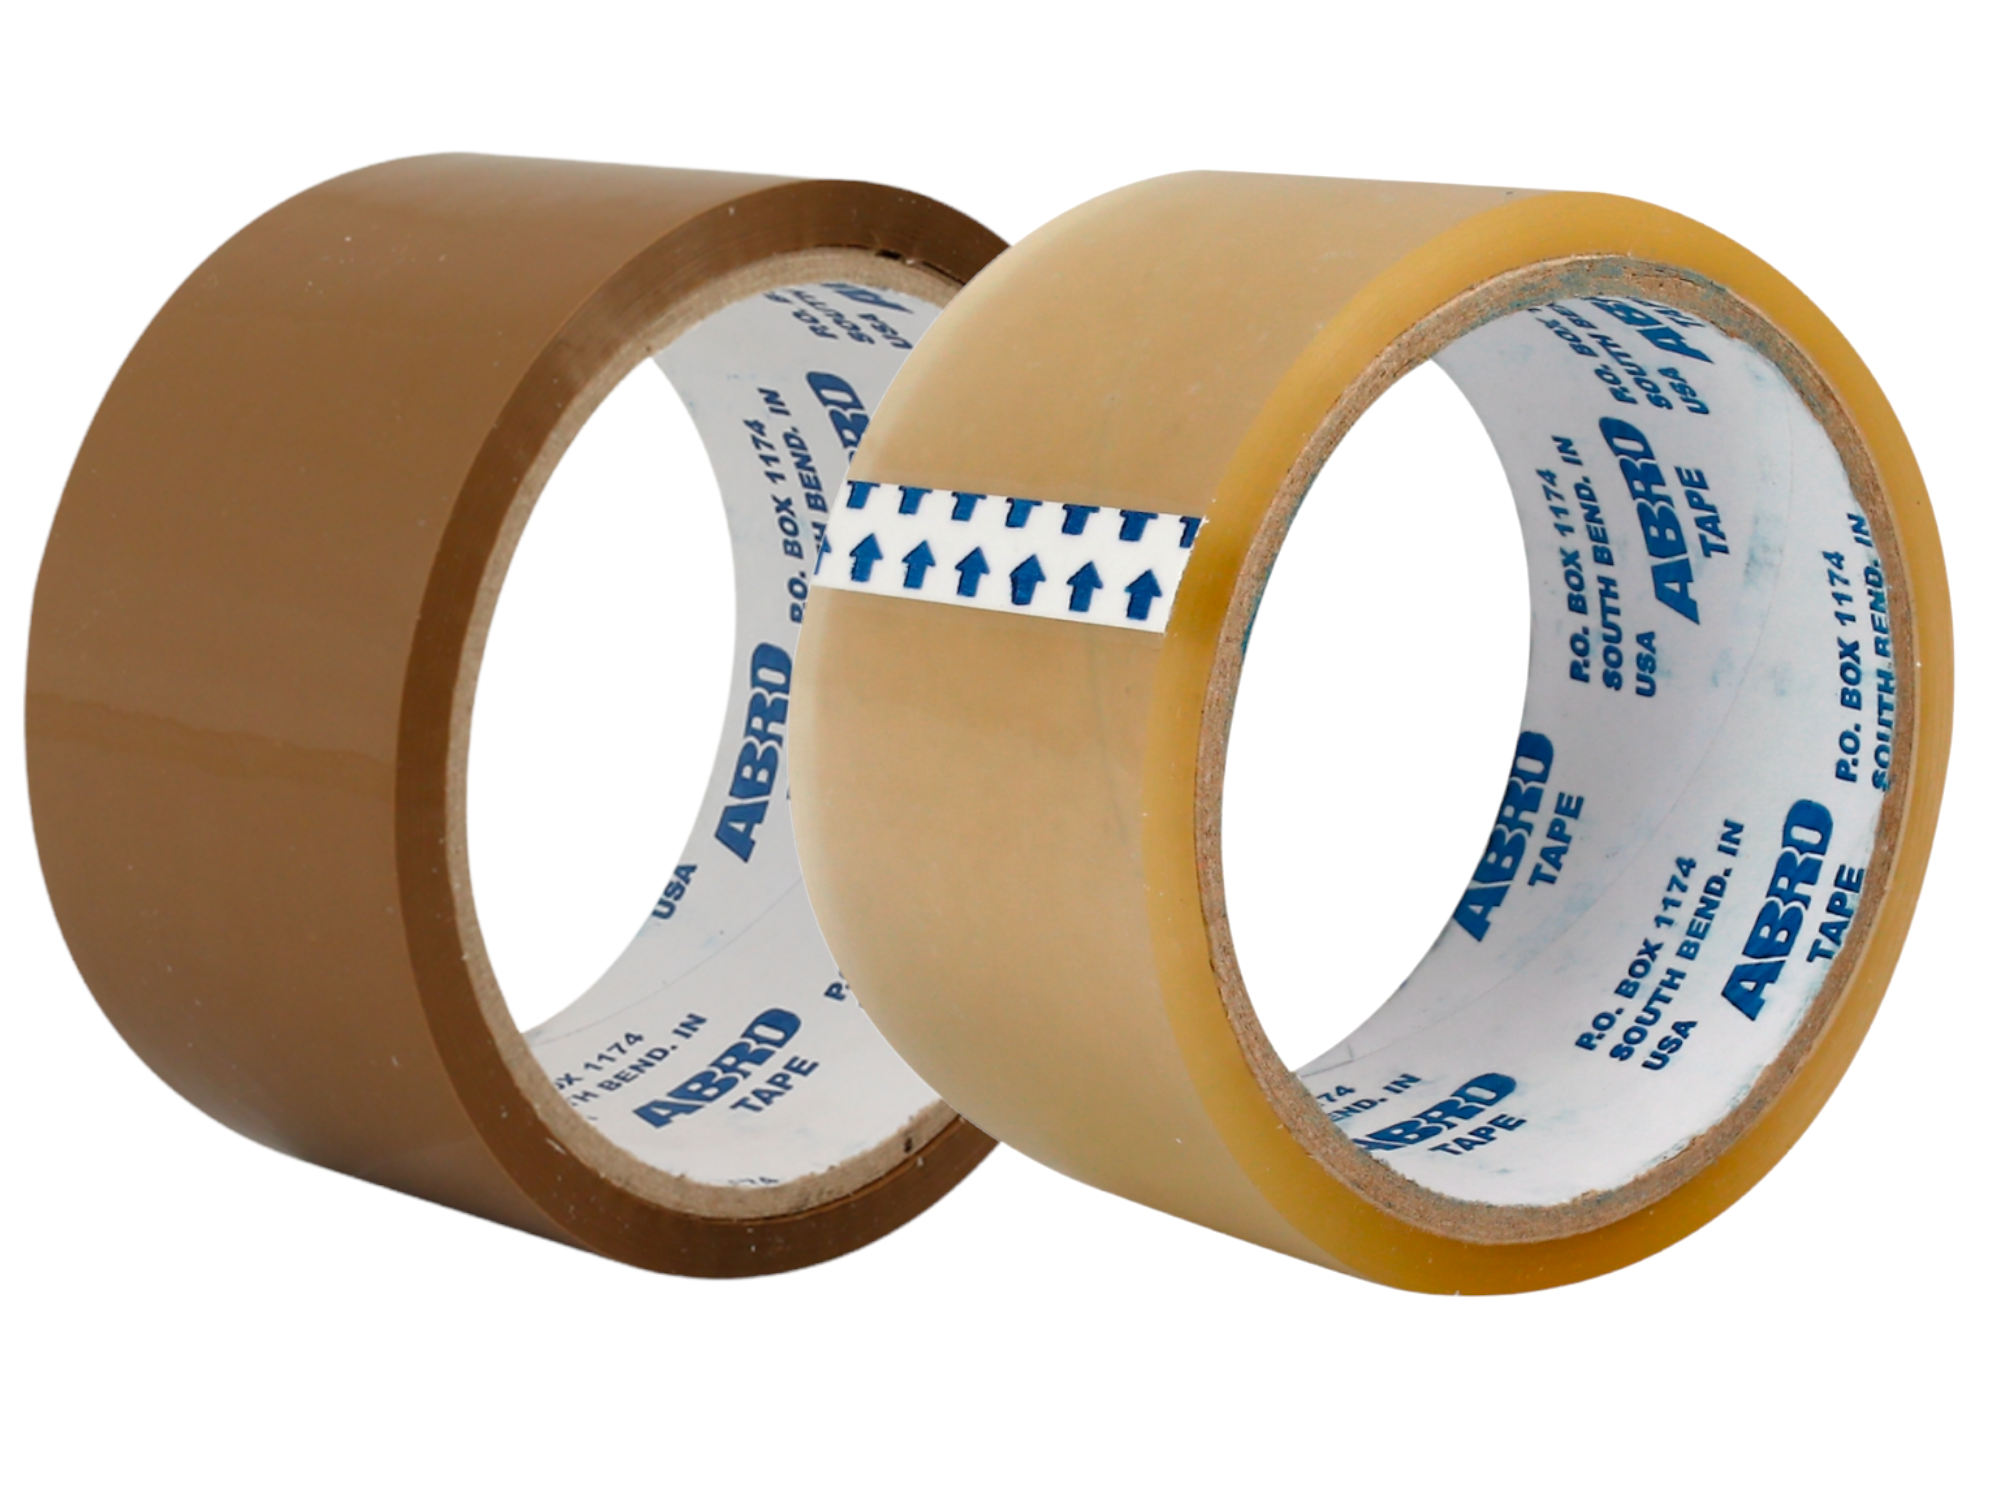 Caja de embalaje marrón fuerte resistente resistente al agua Café Amarillo  cinta adhesiva de sellado de cartón, servicio pesado para embalaje, envío y  movimiento, 60 pulgadas X 2,4mil 1,88 Yard - China